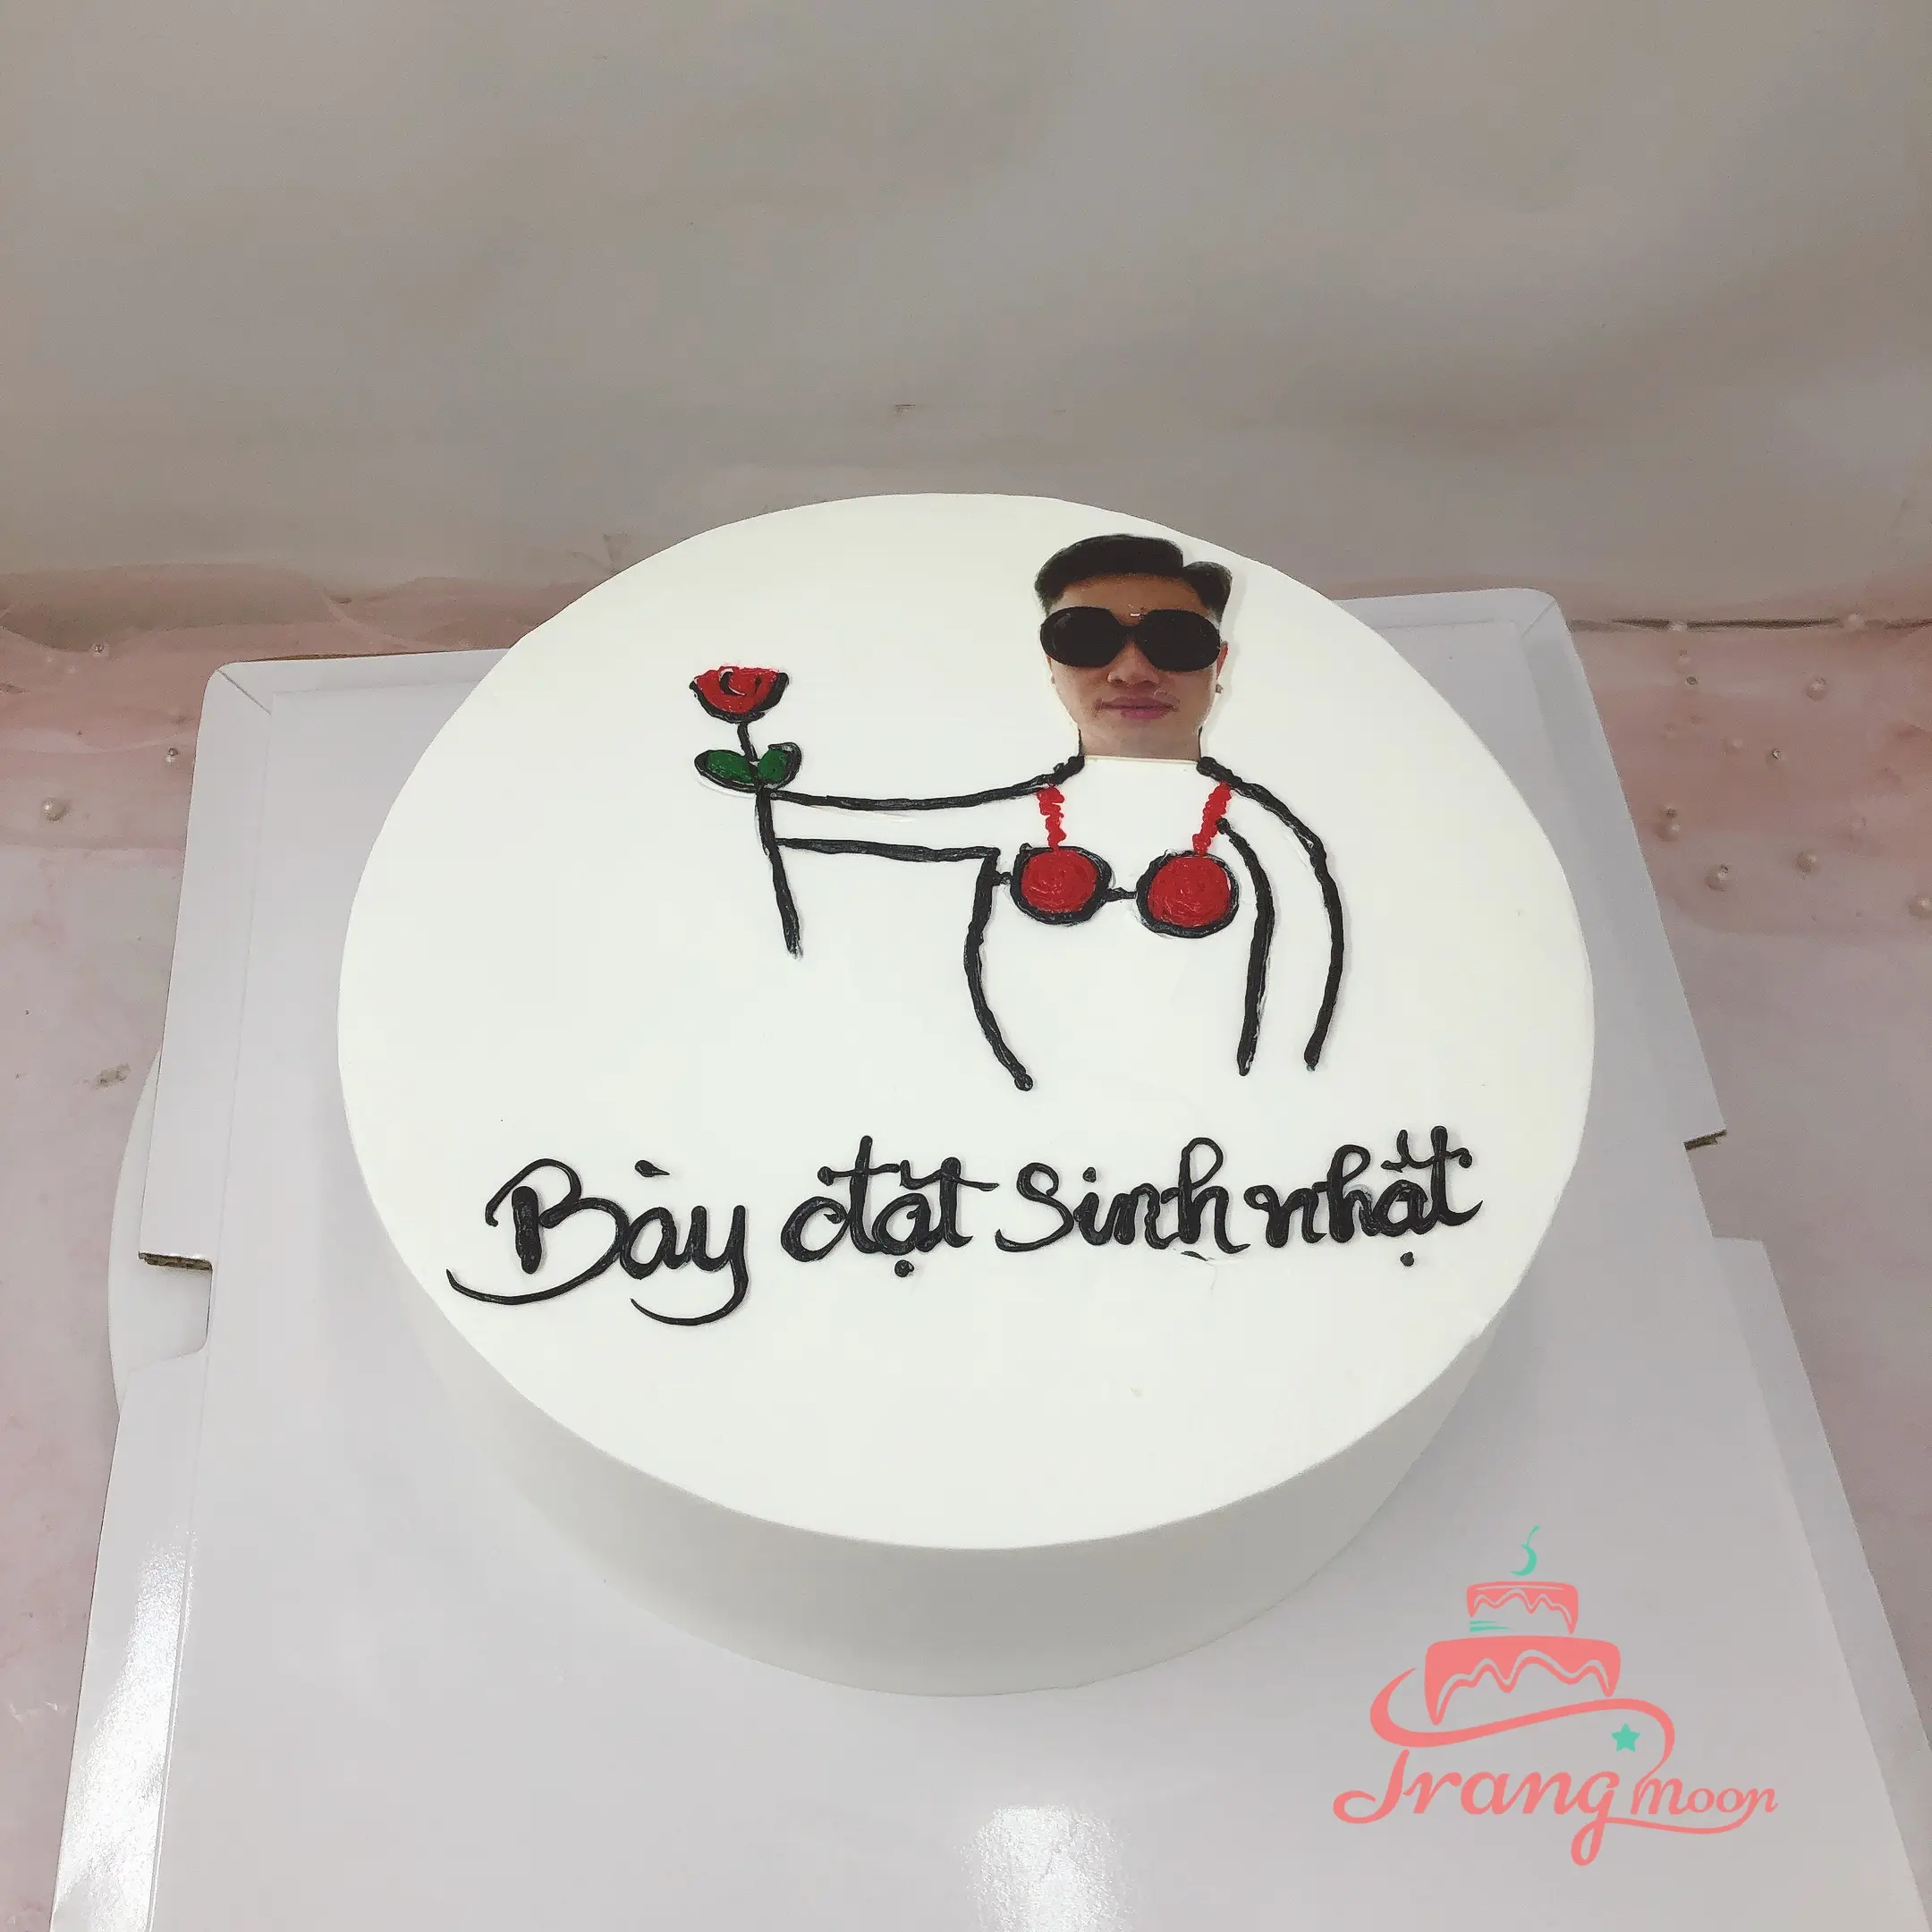 999 hình ảnh bánh sinh nhật đẹp tặng người yêu vô cùng ý  nghĩahttpsupanh123comhinhanh  Bánh sinh nhật Sinh nhật Bánh